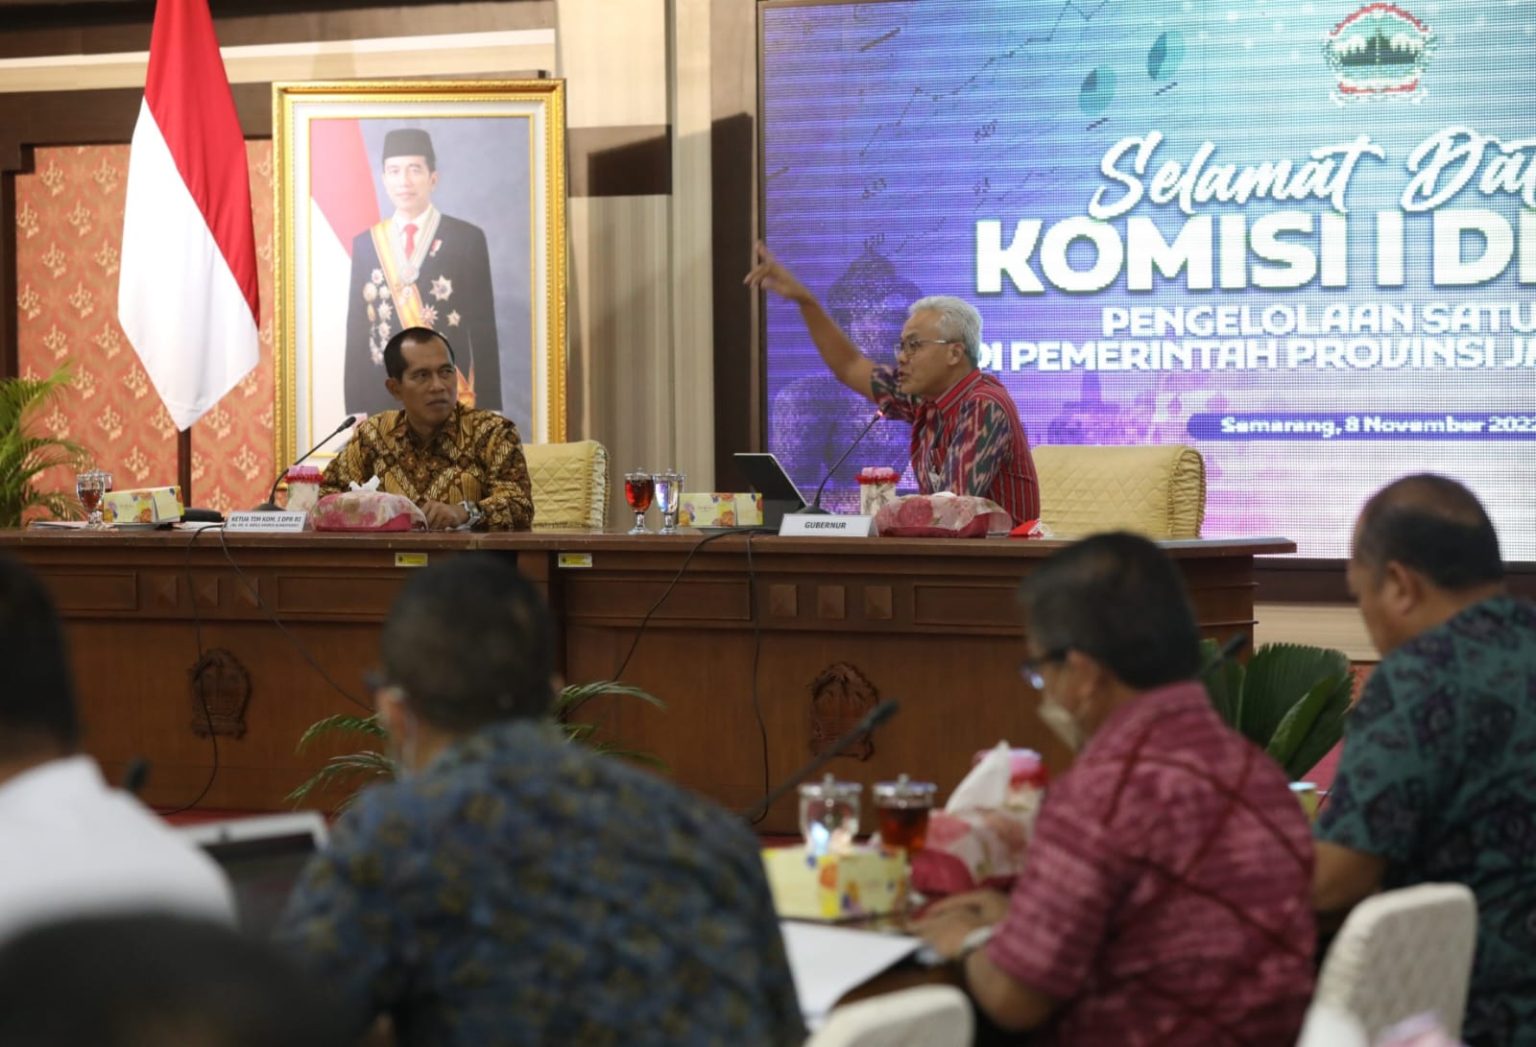 Komisi I DPR RI Ungkap, Satu Data di Jawa Tengah Sudah Maju